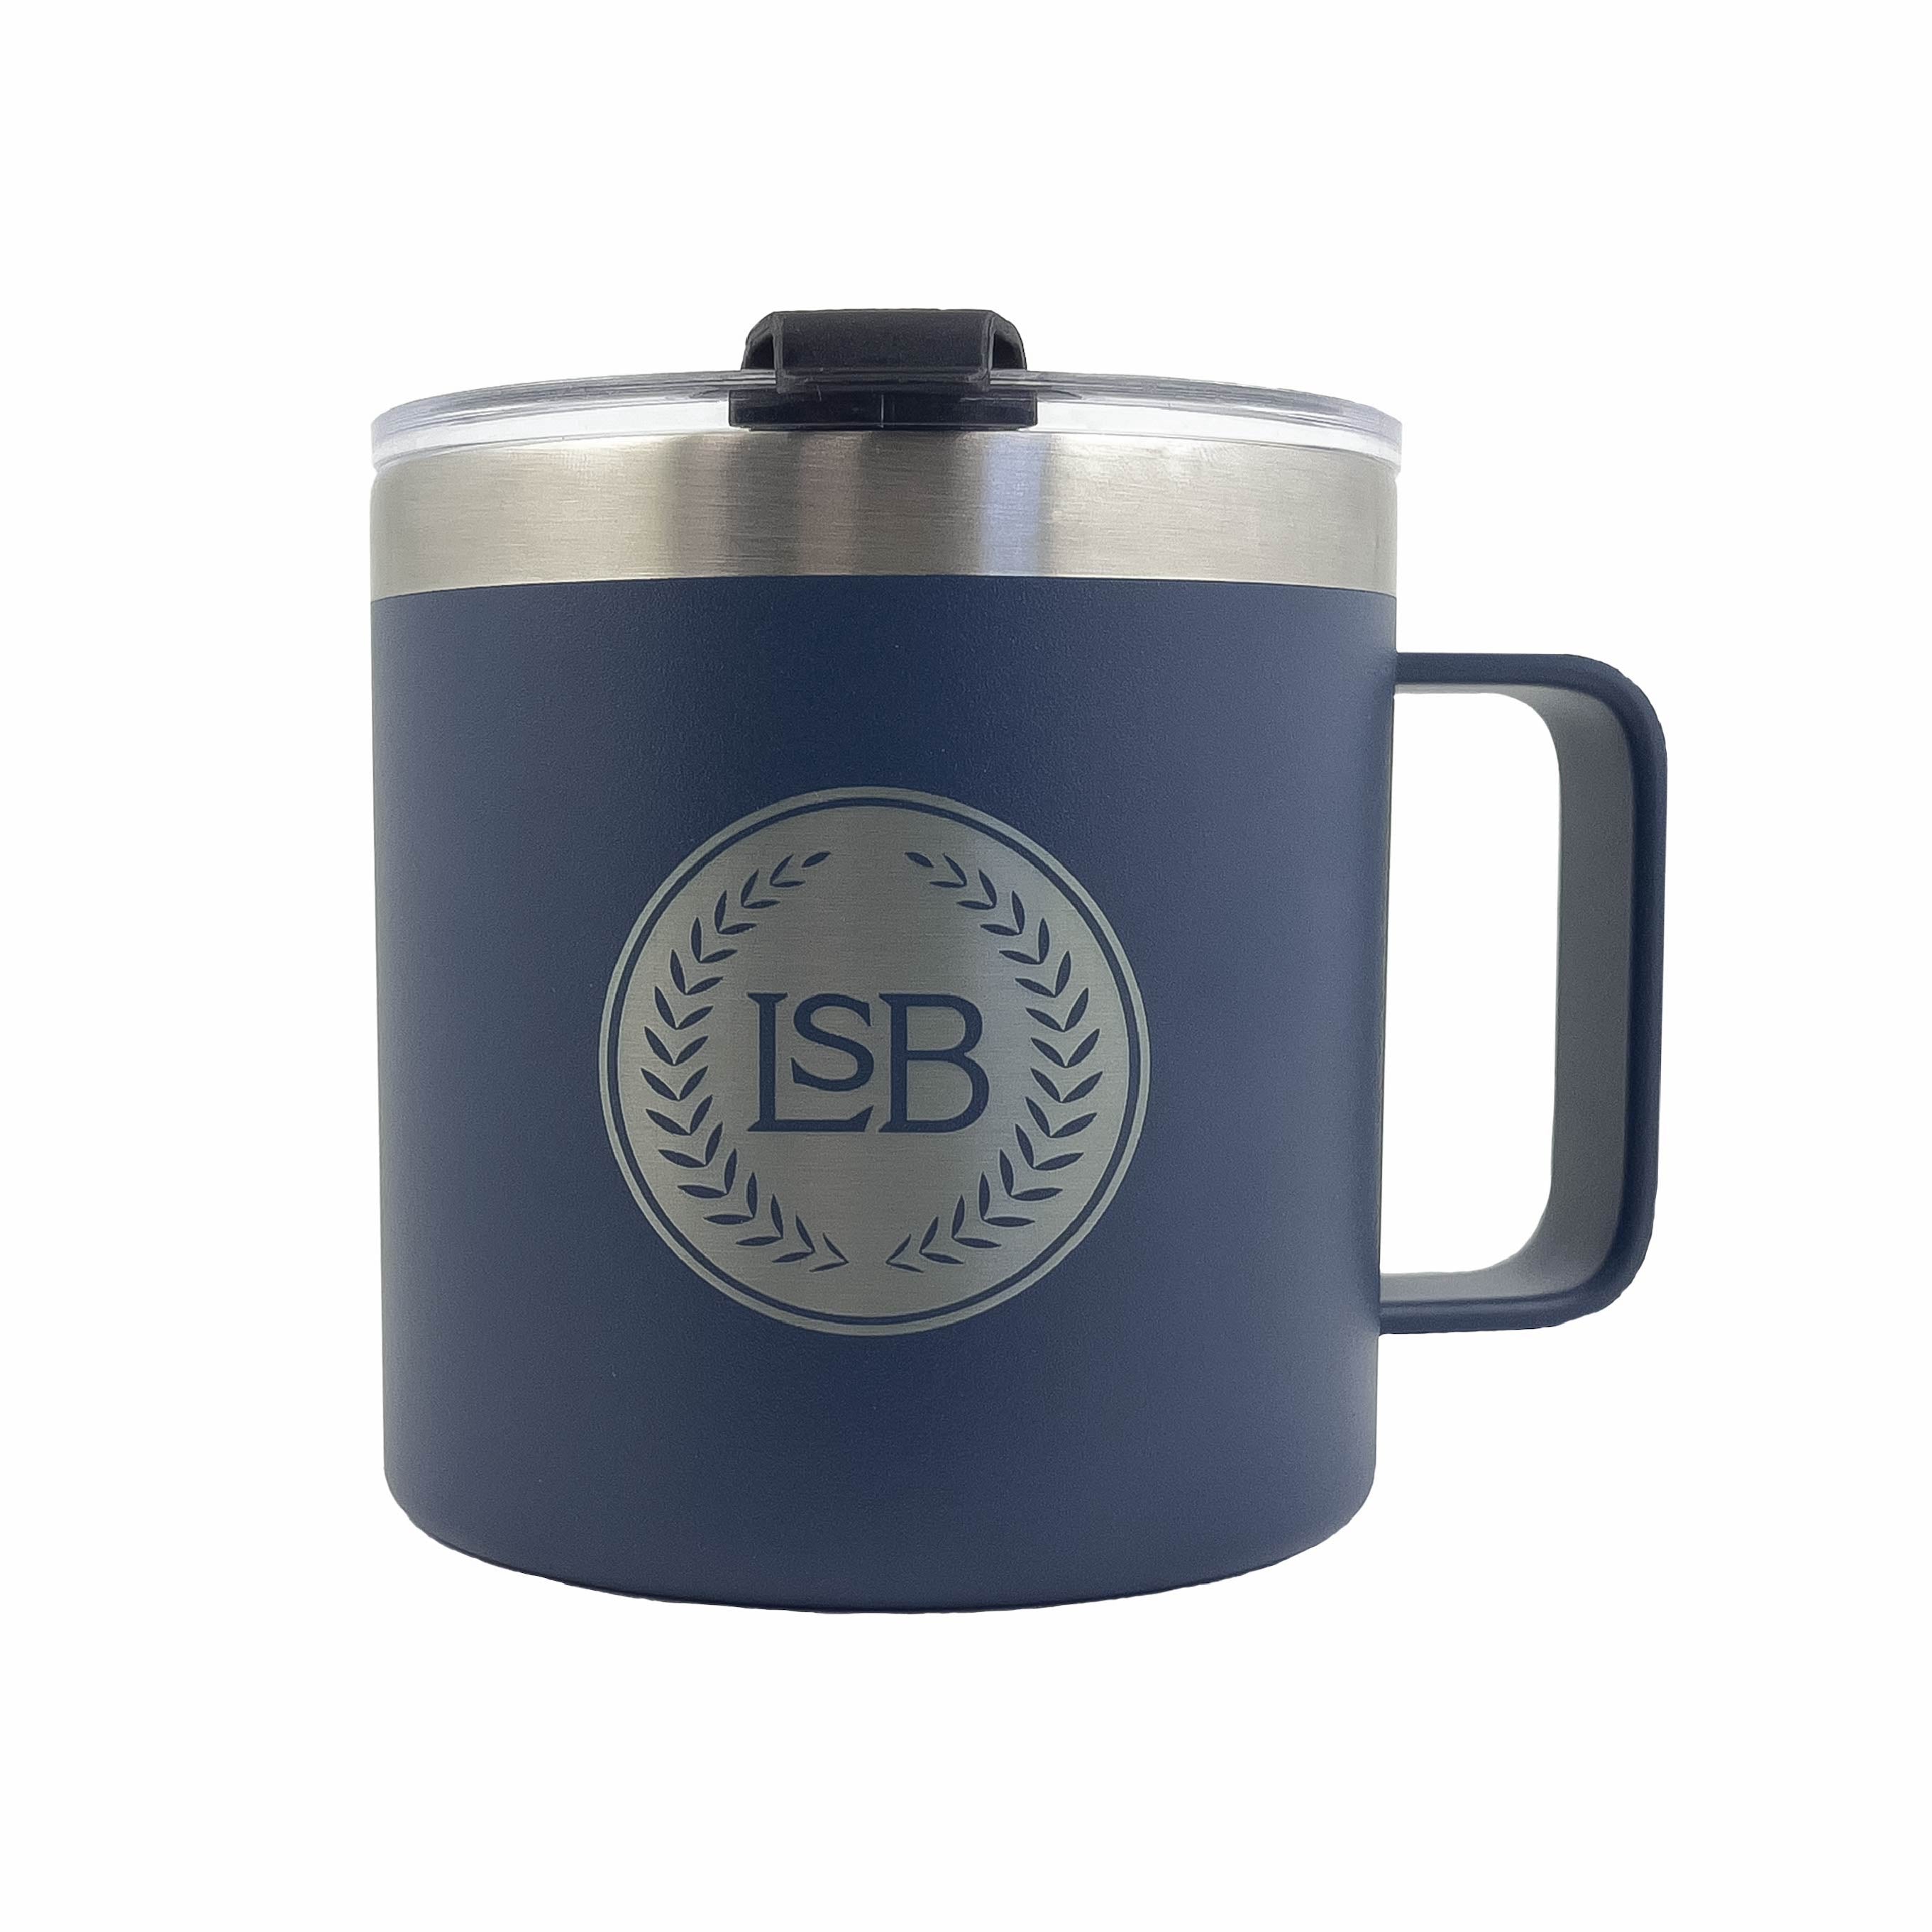 Mug　Steel　Coffee　oz.　14　Publishing　—　316　LSB　Stainless